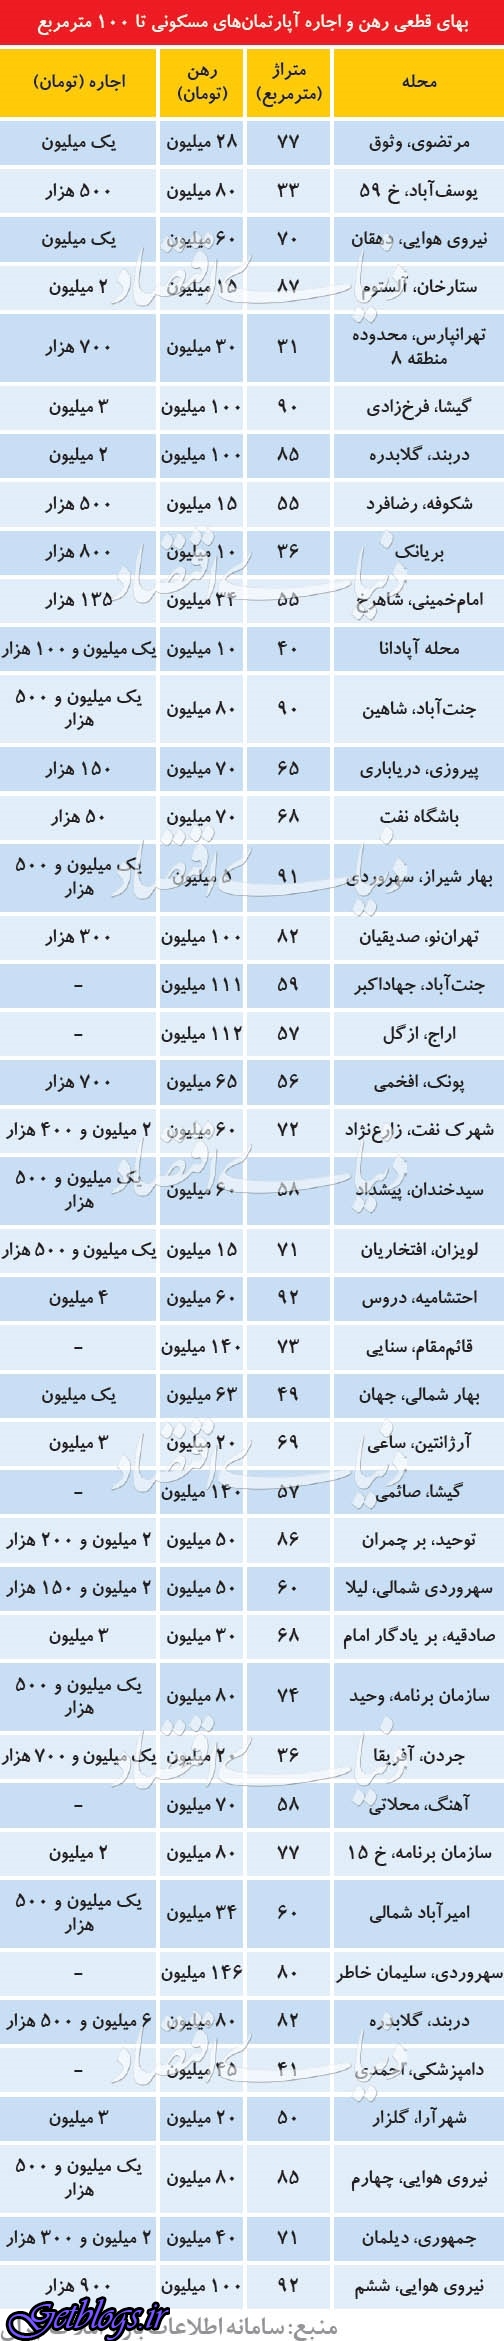 قیمت رهن و اجاره آپارتمان زیر 100متر در بعضی نقاط پایتخت کشور عزیزمان ایران